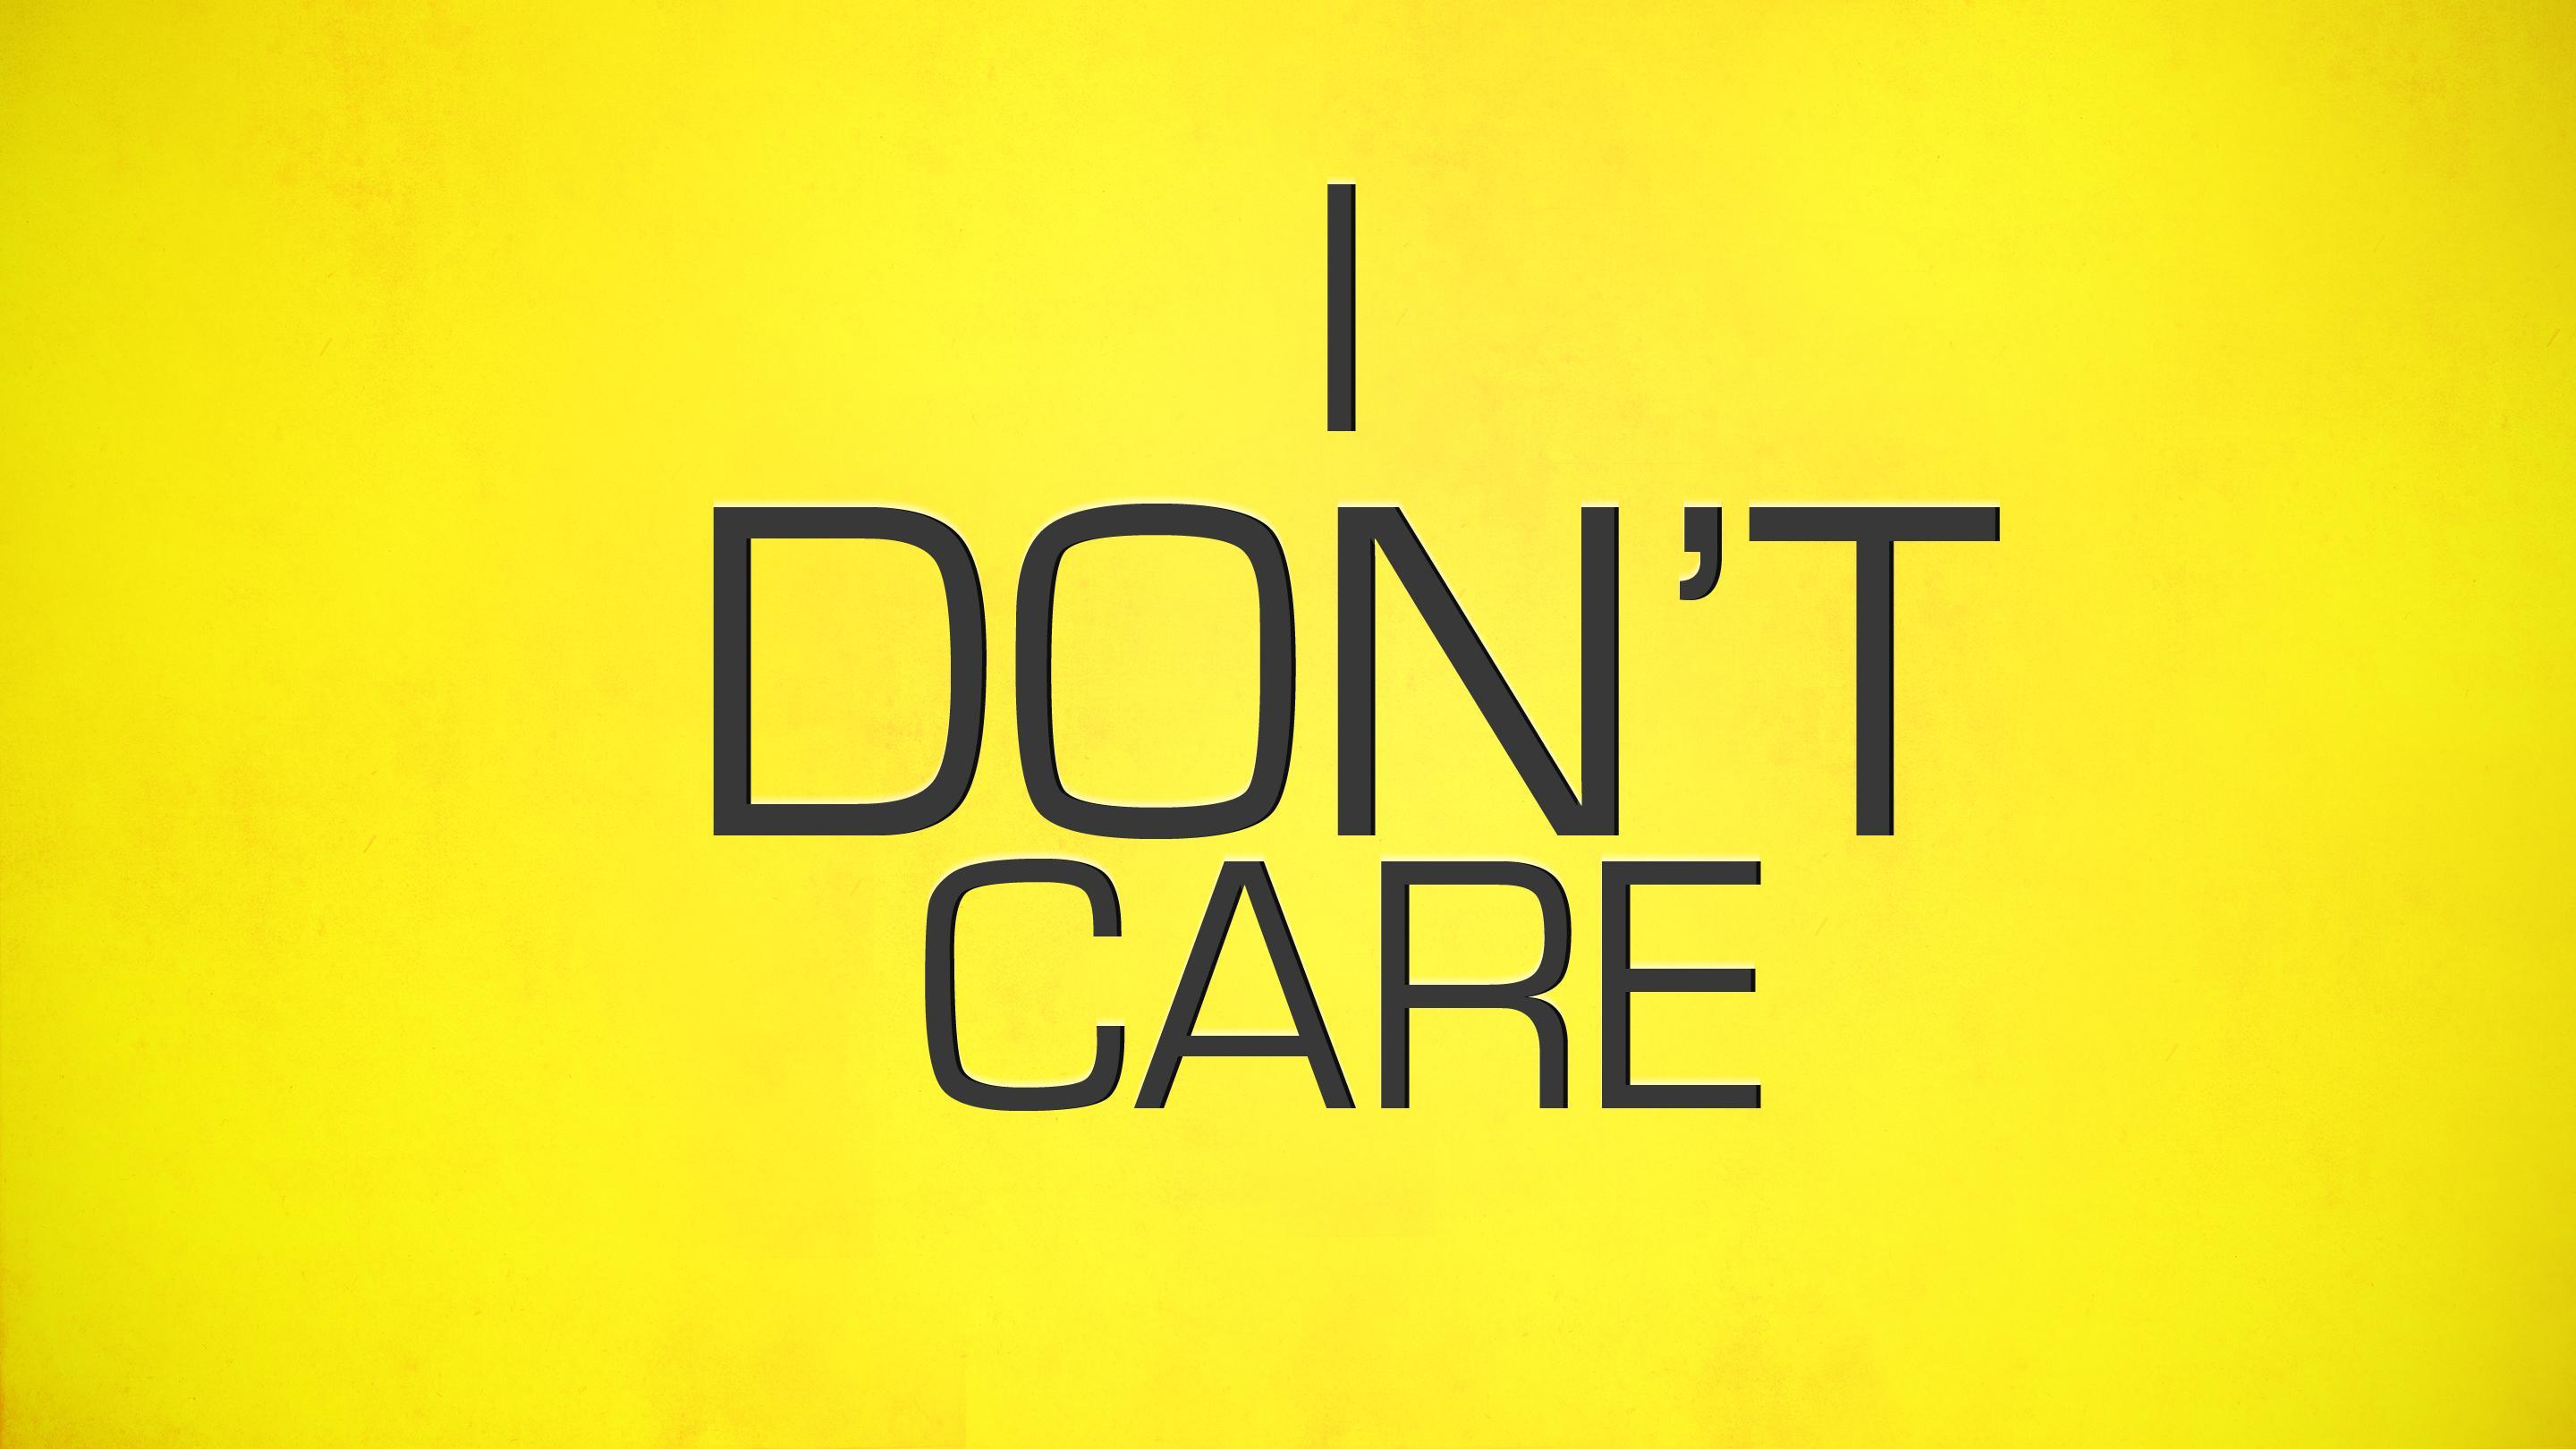 Don't Care Wallpaper. I Don't Care Wallpaper, Care Bears Wallpaper and Childcare Wallpaper